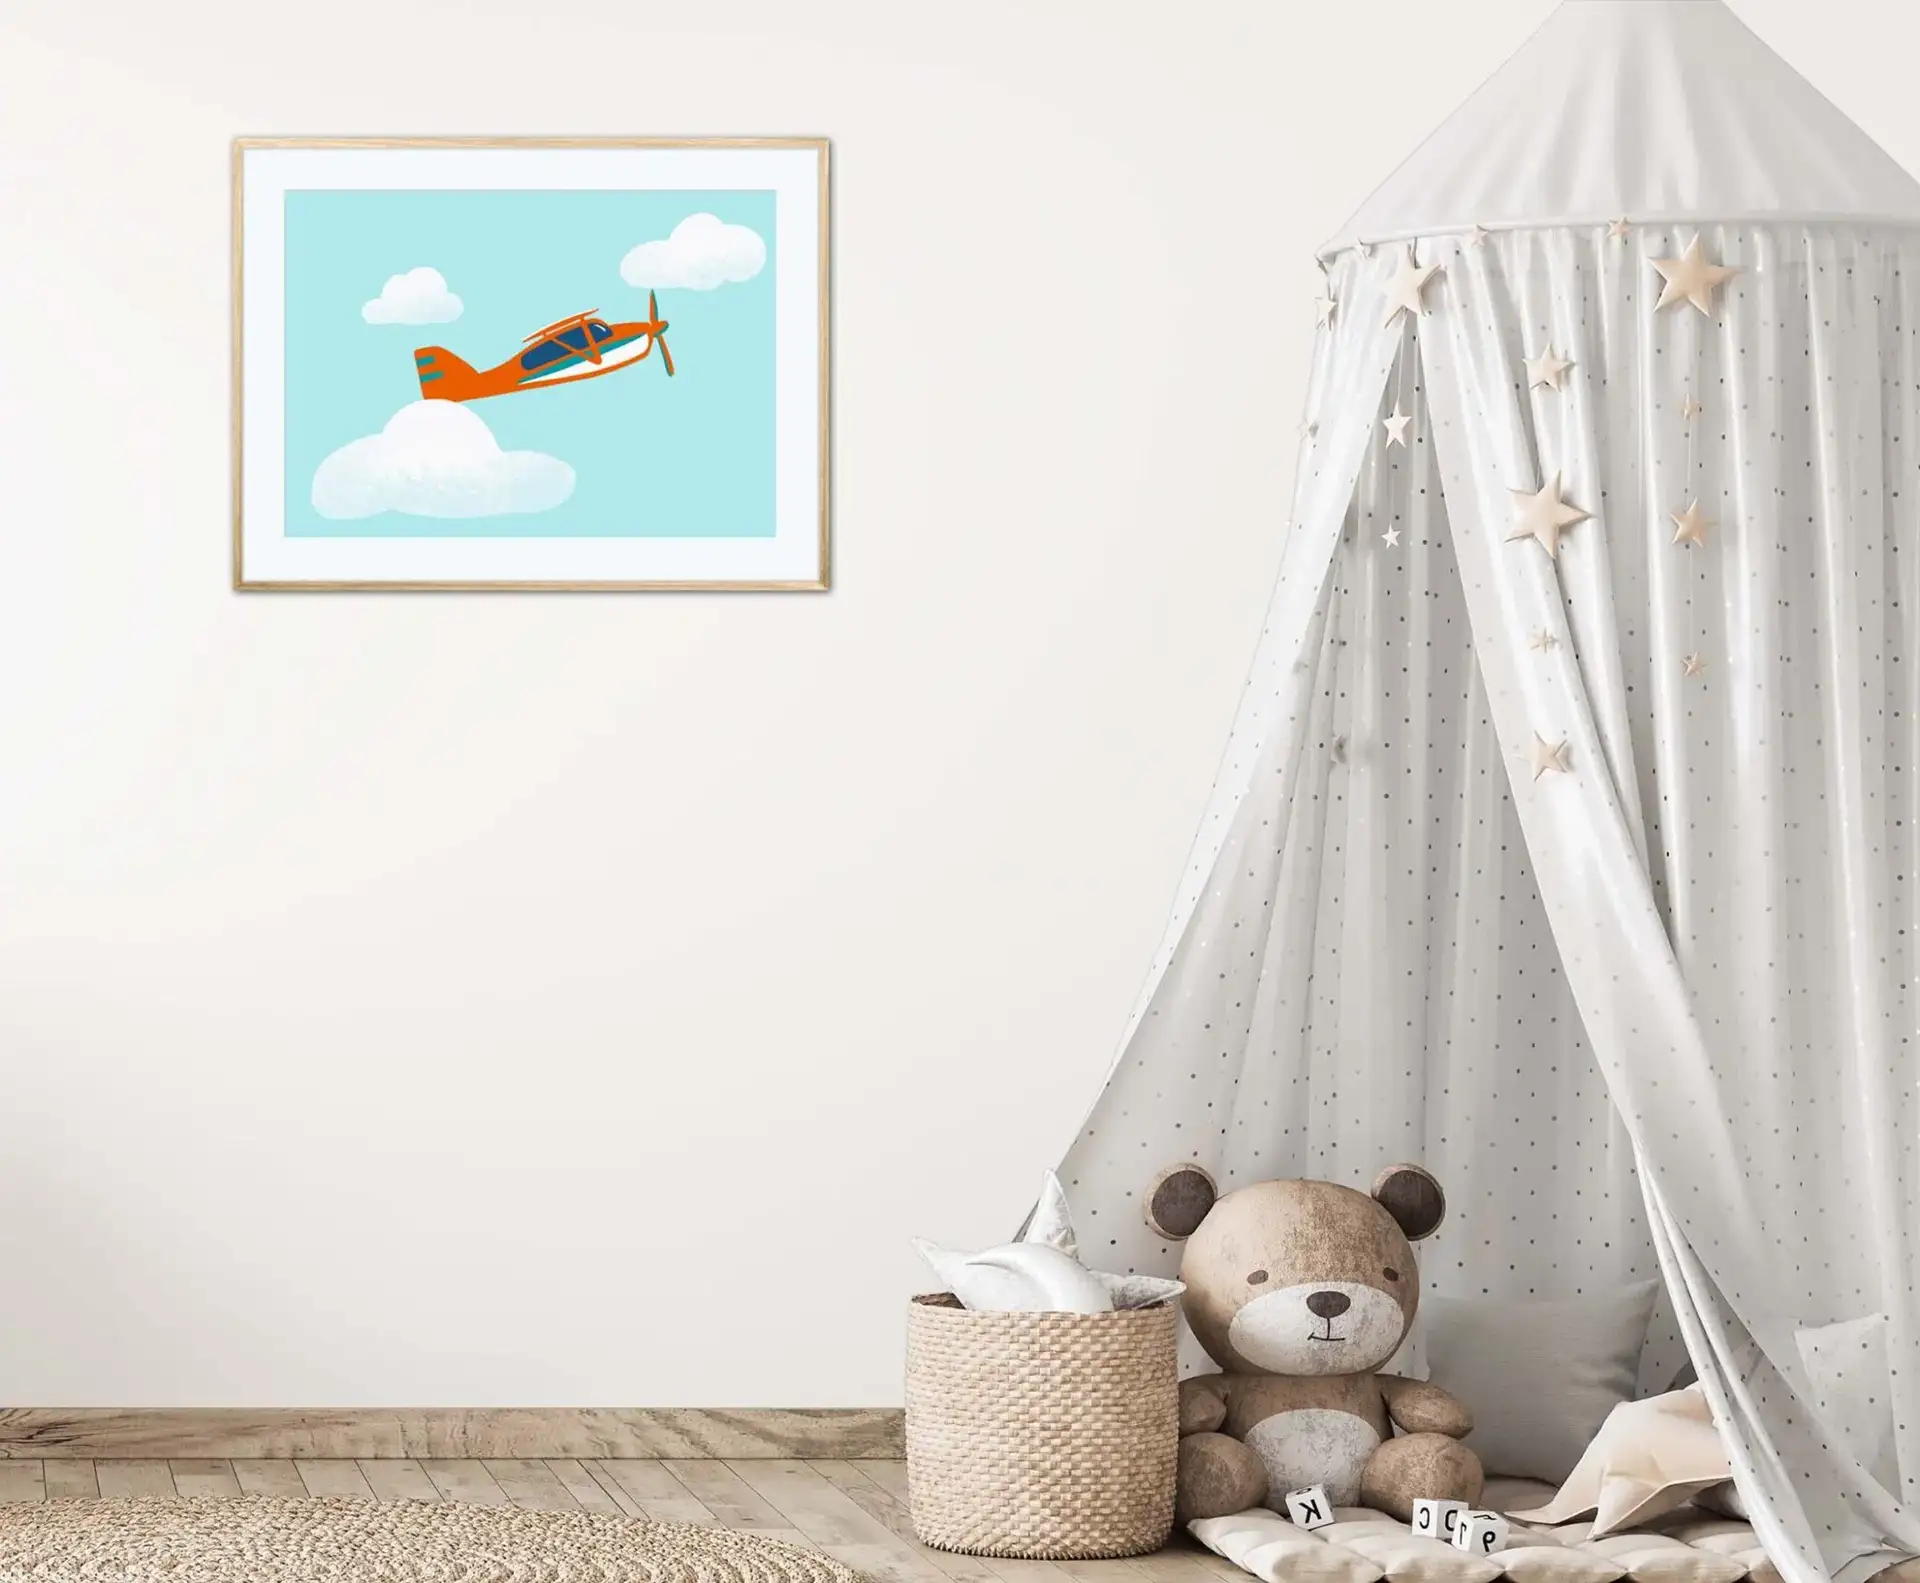 Affiche pour enfant avec une illustration d'avion pour la décoration d'une chambre d'enfant. DENADDA